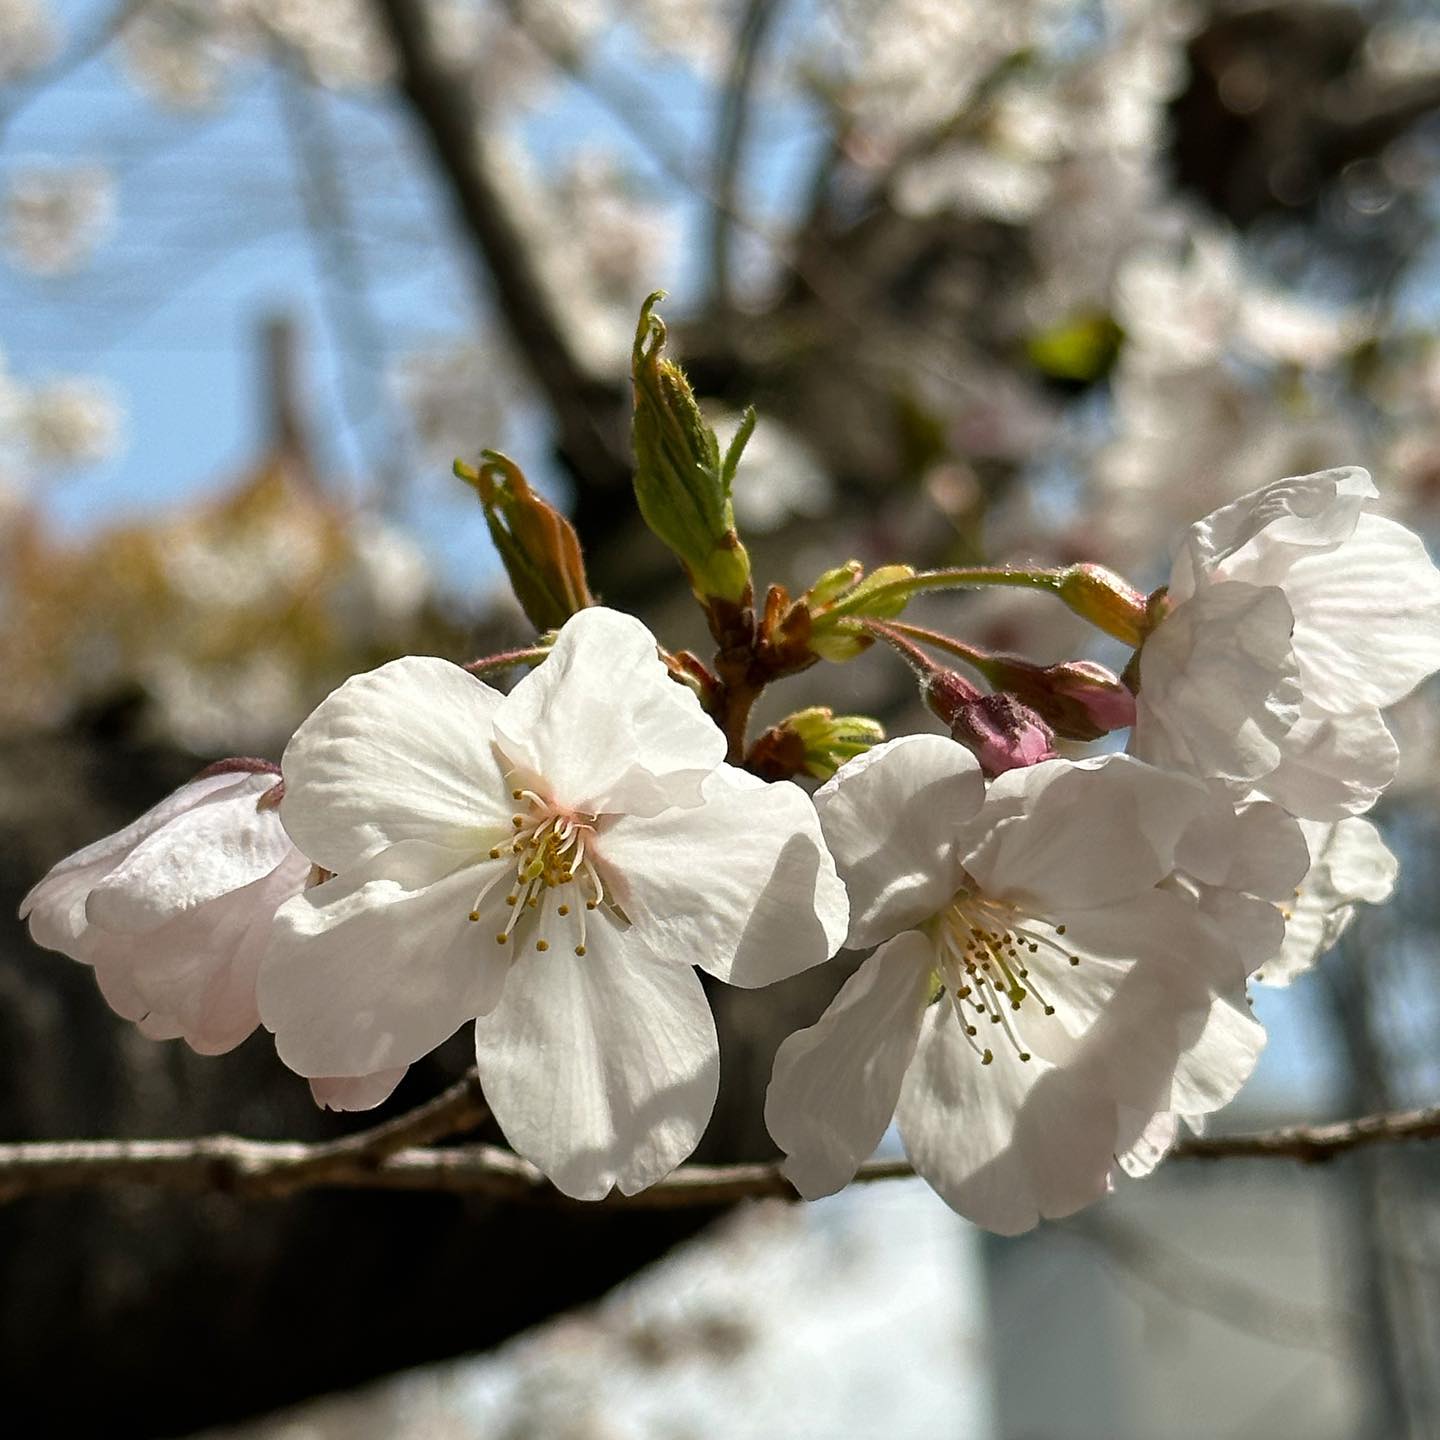 今日（3/27）の桜めぐり。松山市コミセン子ども館南側の桜の木。かなり満開に近づいた様子。#愛媛県#松山市 #桜 #サクラ #さくら #コミセン #青空 #満開間近